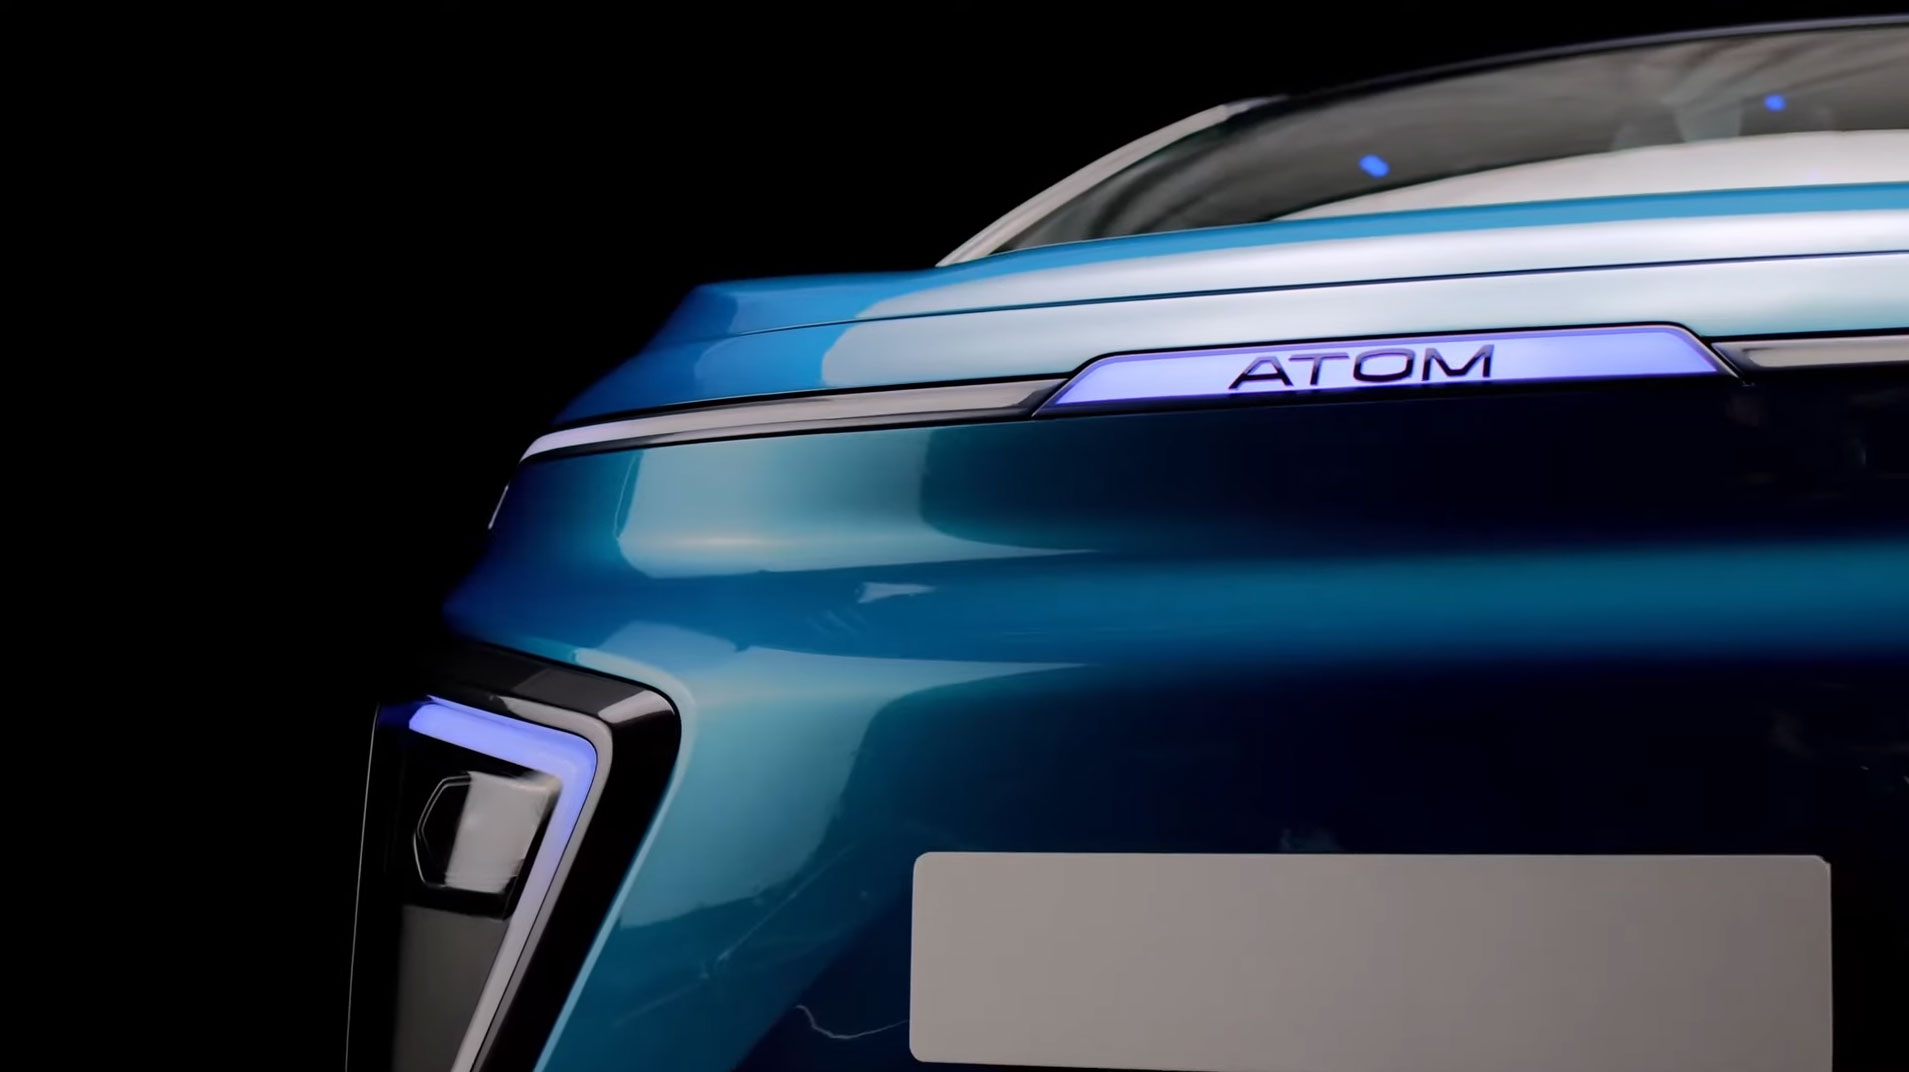 🚗 Russian Electric Car "Atom" Futuristic Design